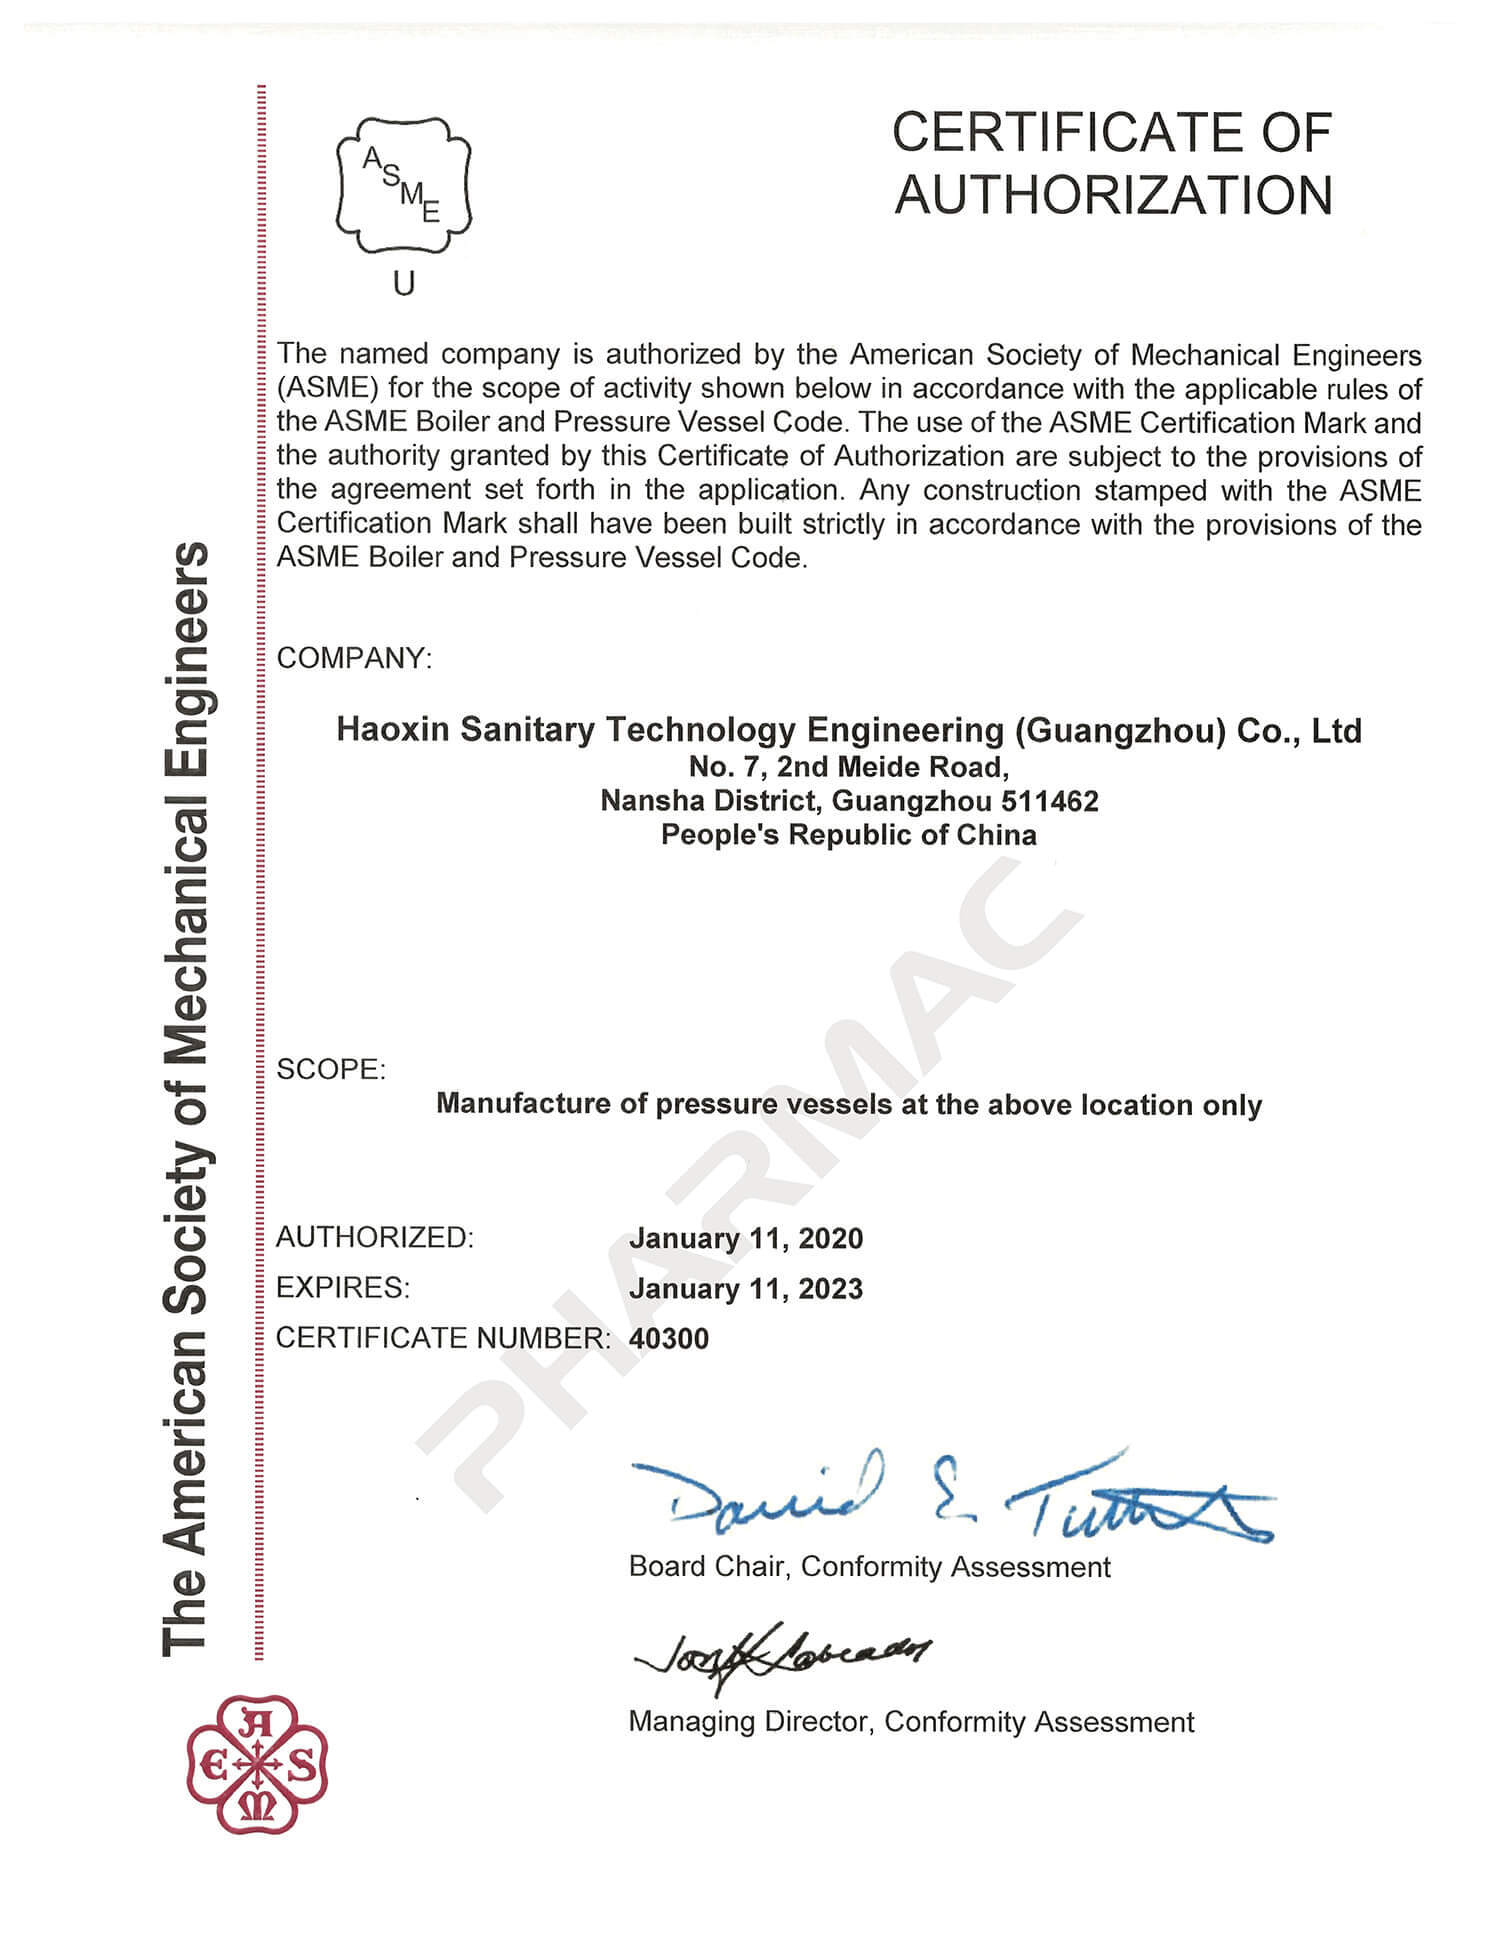 ASME （美国机械工程协会）U钢印授权证书